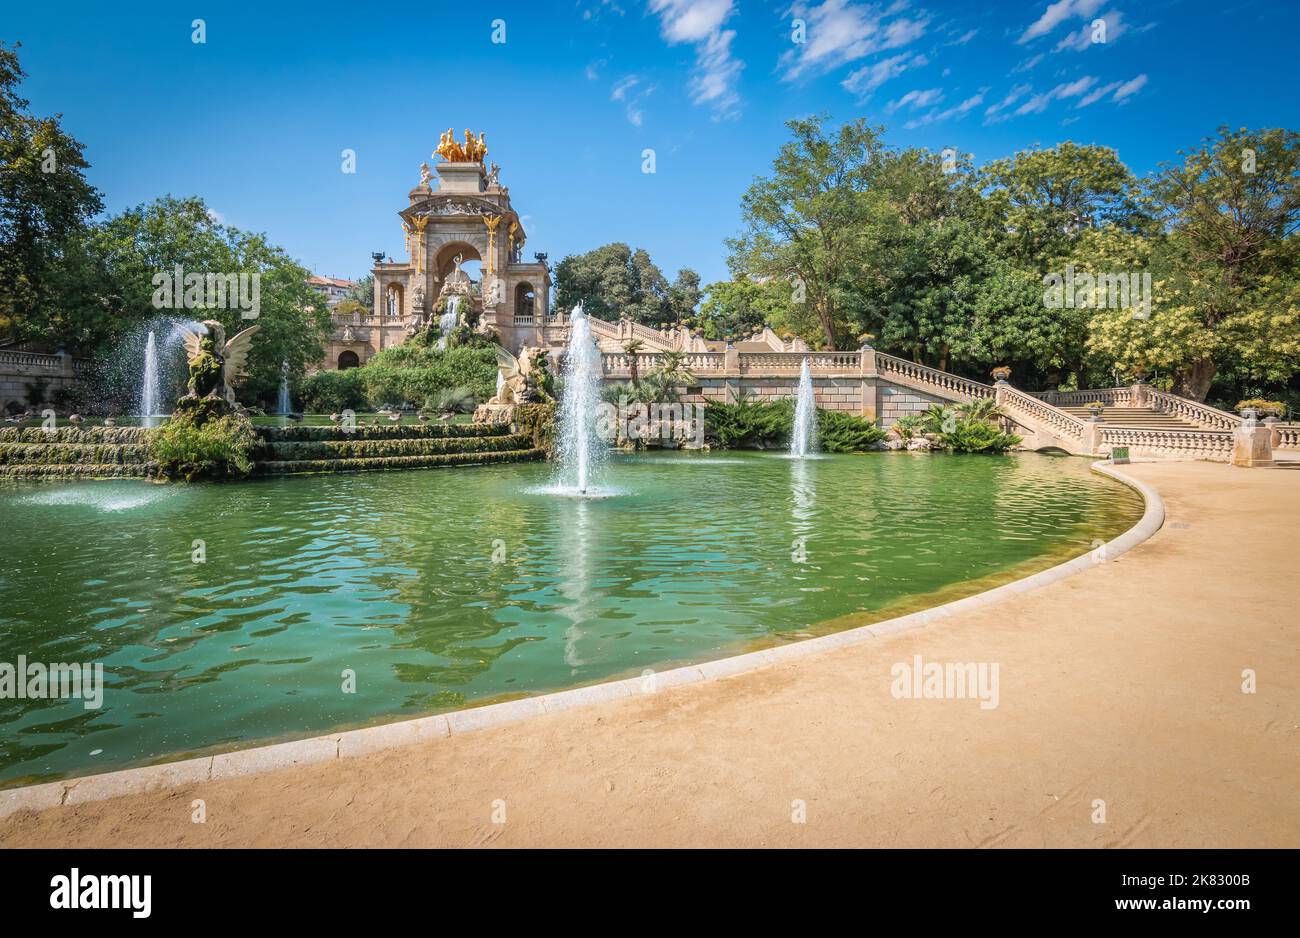 Parque urbano 'Parc de la Ciutadella' con jardín histórico y fuentes en Barcelona, España. Foto de stock